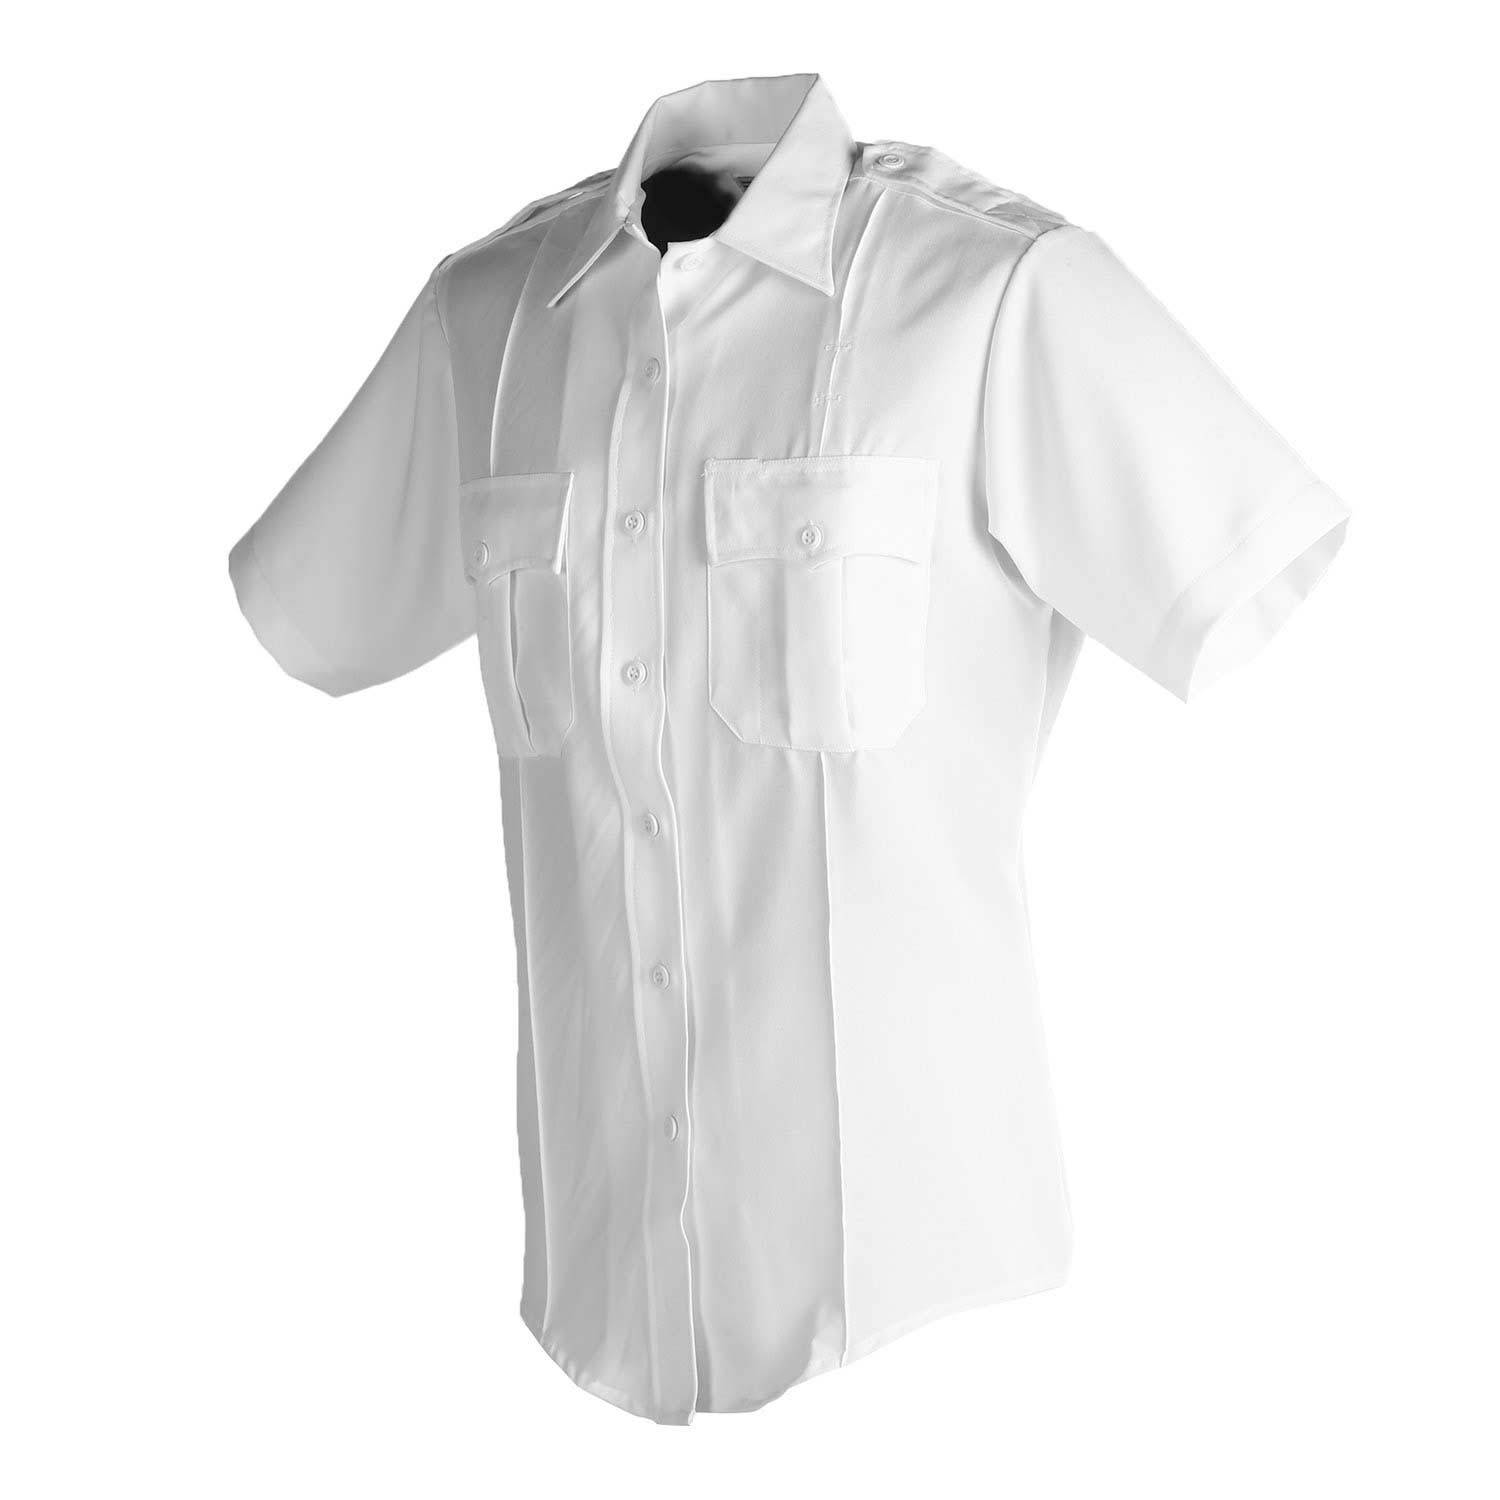 United Uniform Women's Polyflex Short Sleeve Shirt